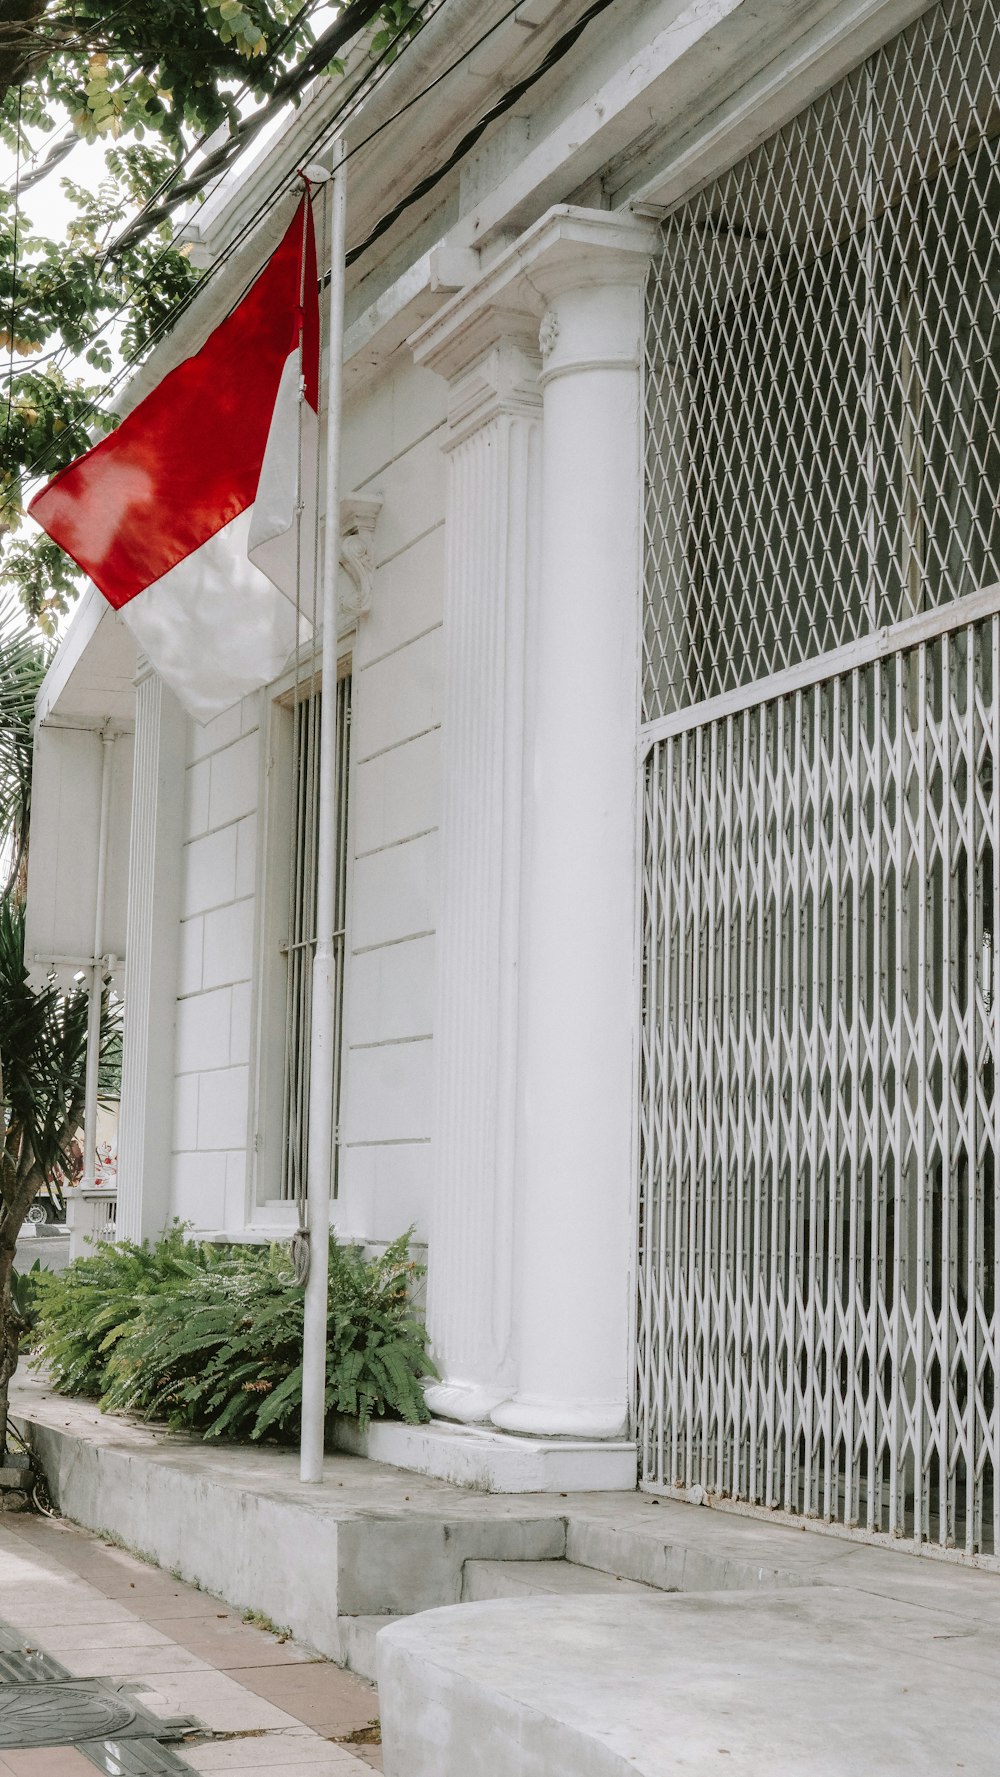 una bandera roja y blanca en un poste fuera de un edificio